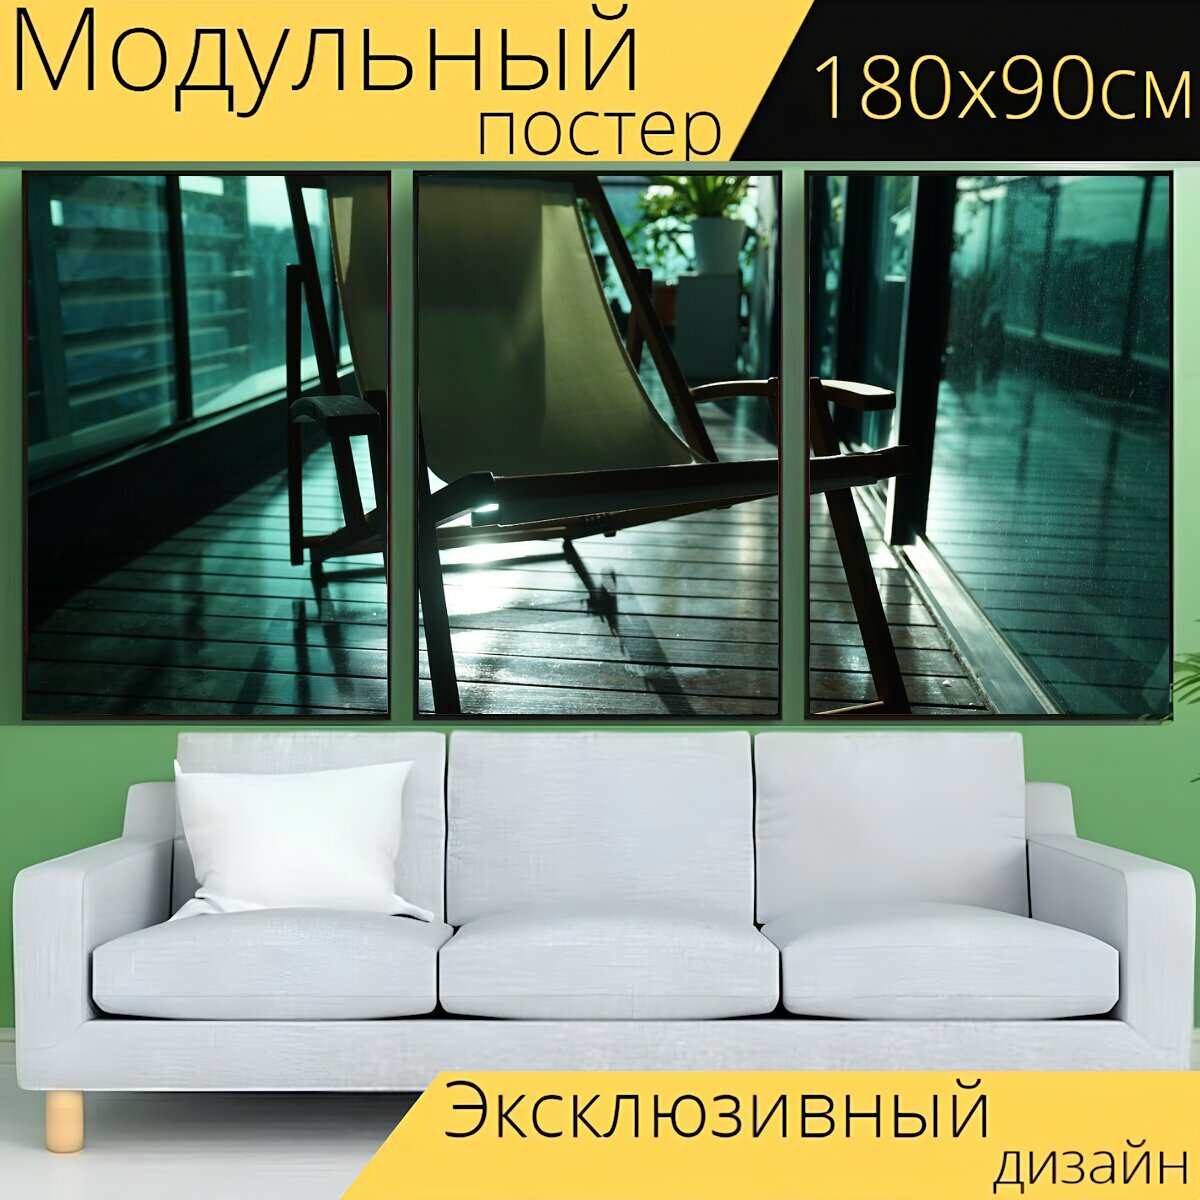 Модульный постер "Ленивый стул, холст шезлонг, шезлонг" 180 x 90 см. для интерьера